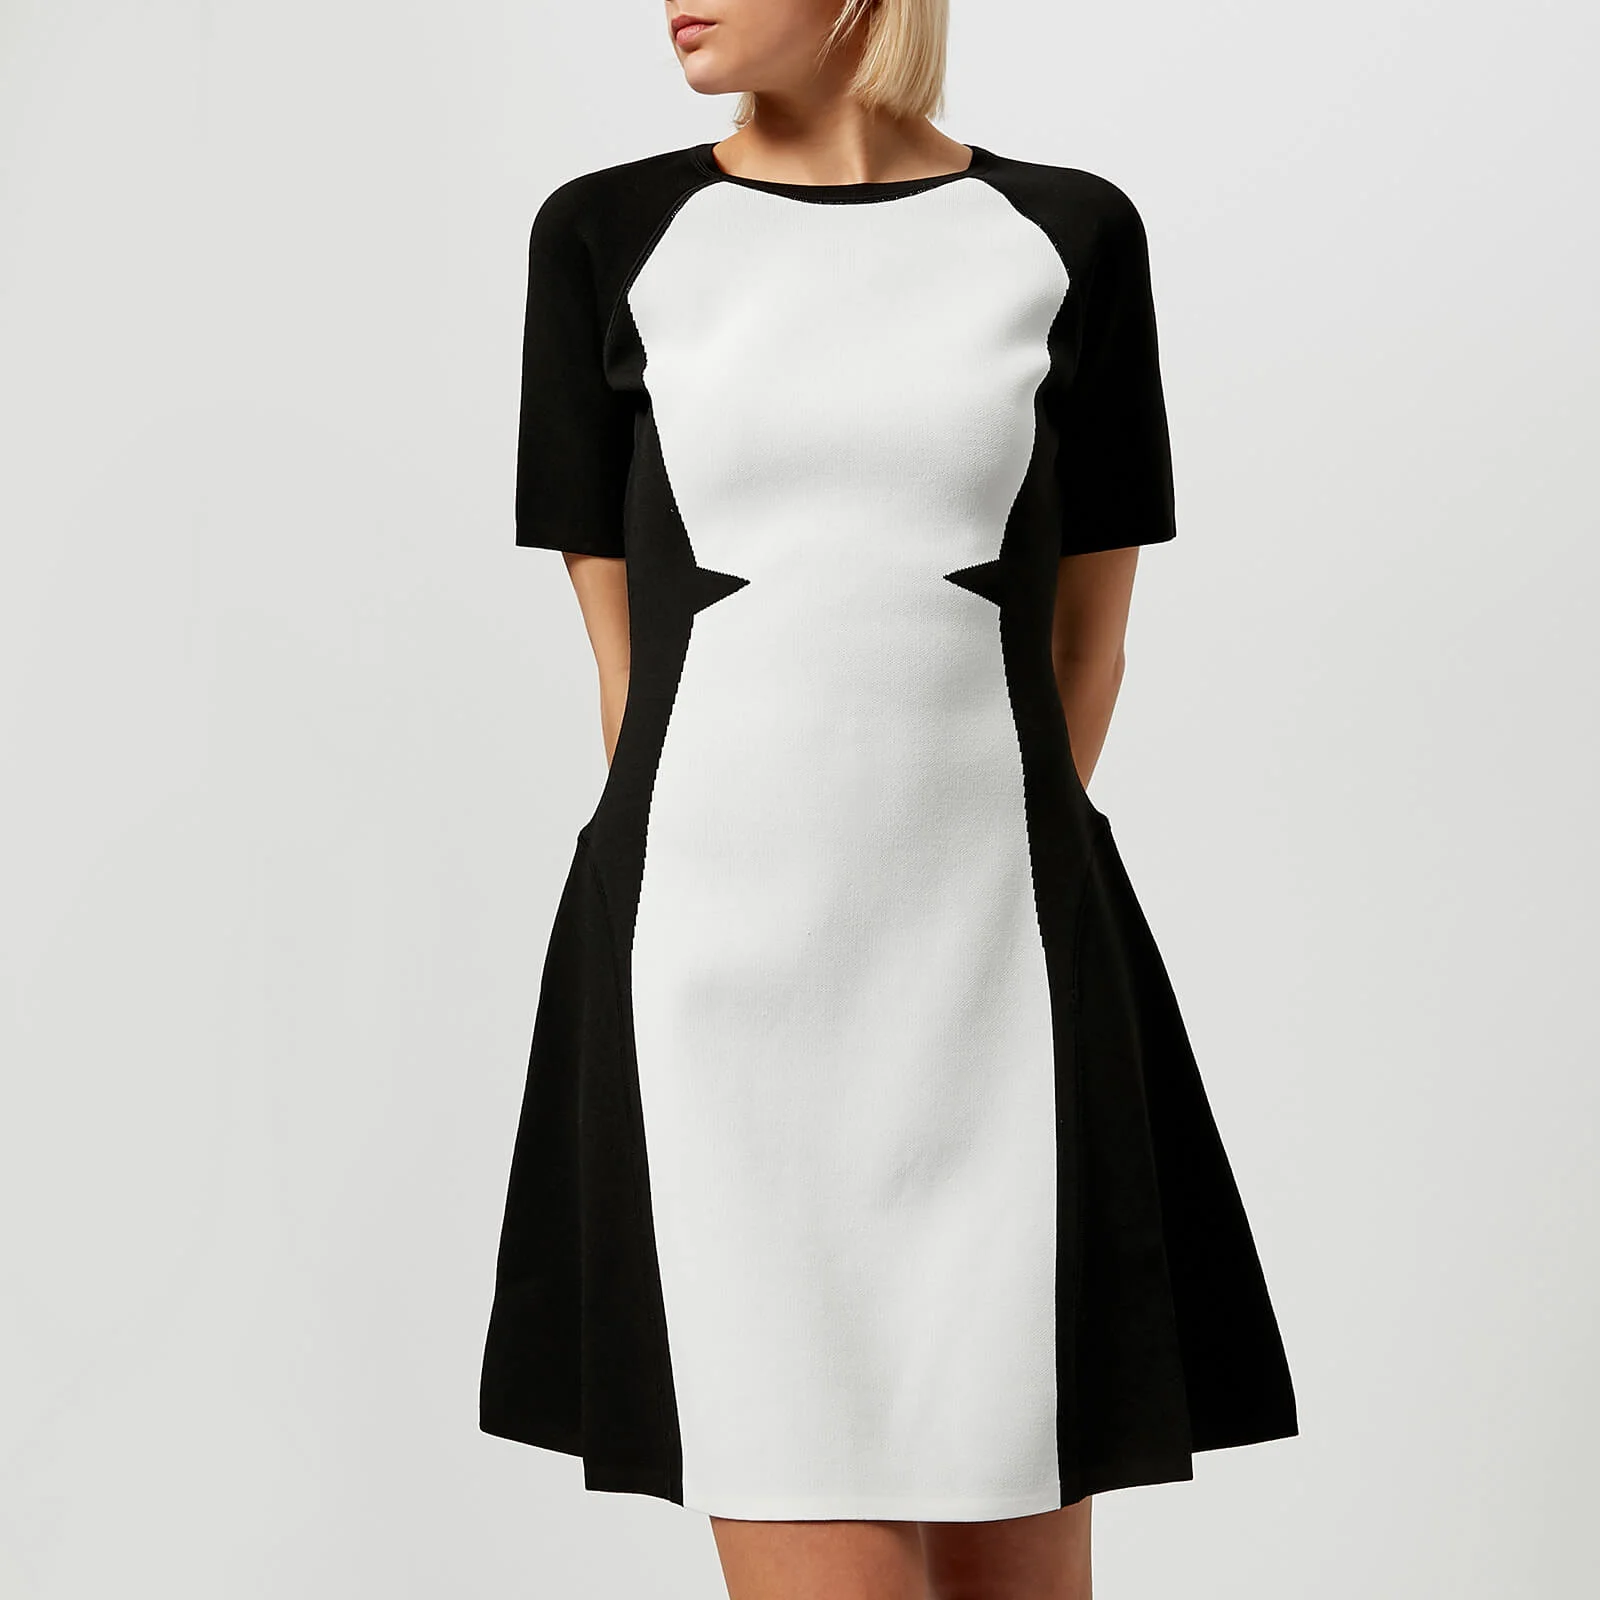 Karl Lagerfeld Women's Flare Dress - Black/White Image 1